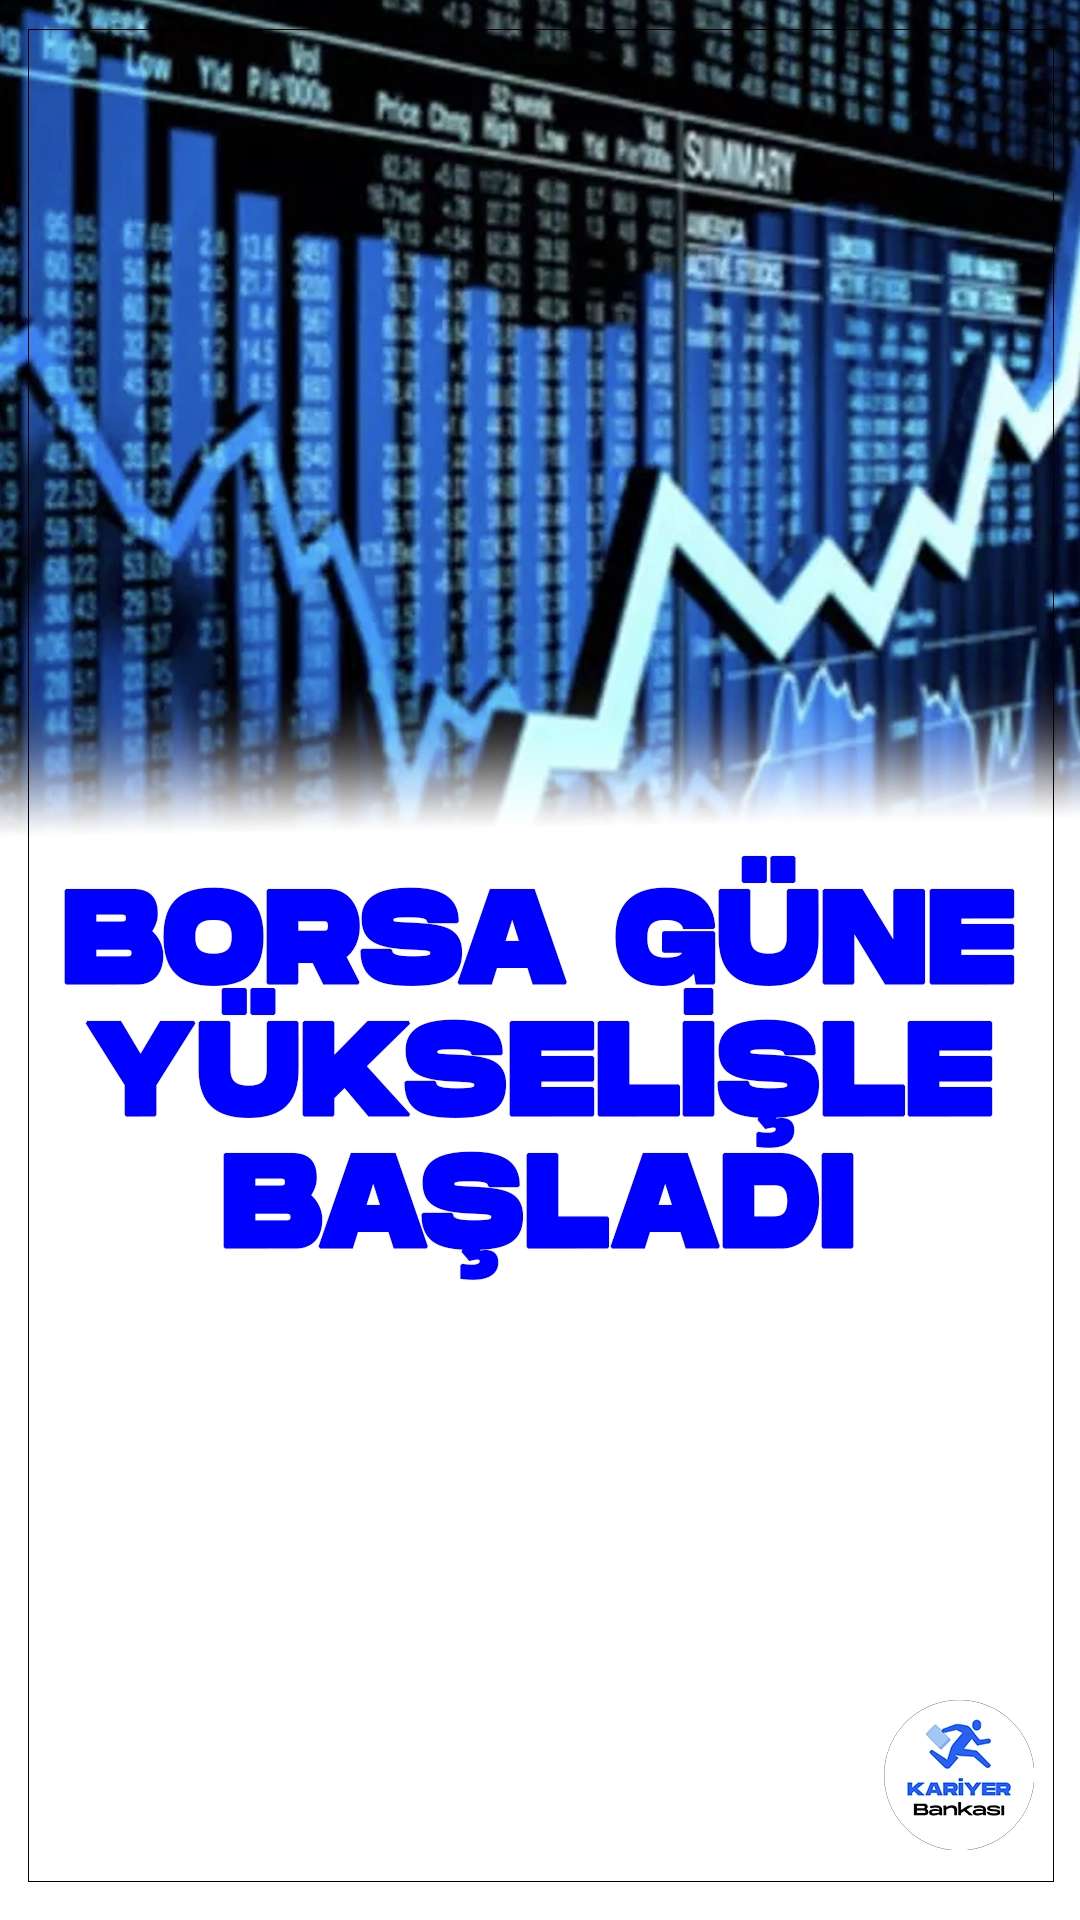 Borsa Güne Yükselişle Başladı.Borsa İstanbul'da işlem gören BIST 100 endeksi, güne olumlu bir ivmeyle başladı. Endeks, %1,61'lik bir yükselişle 9.275,88 puandan işlem görmeye başladı.